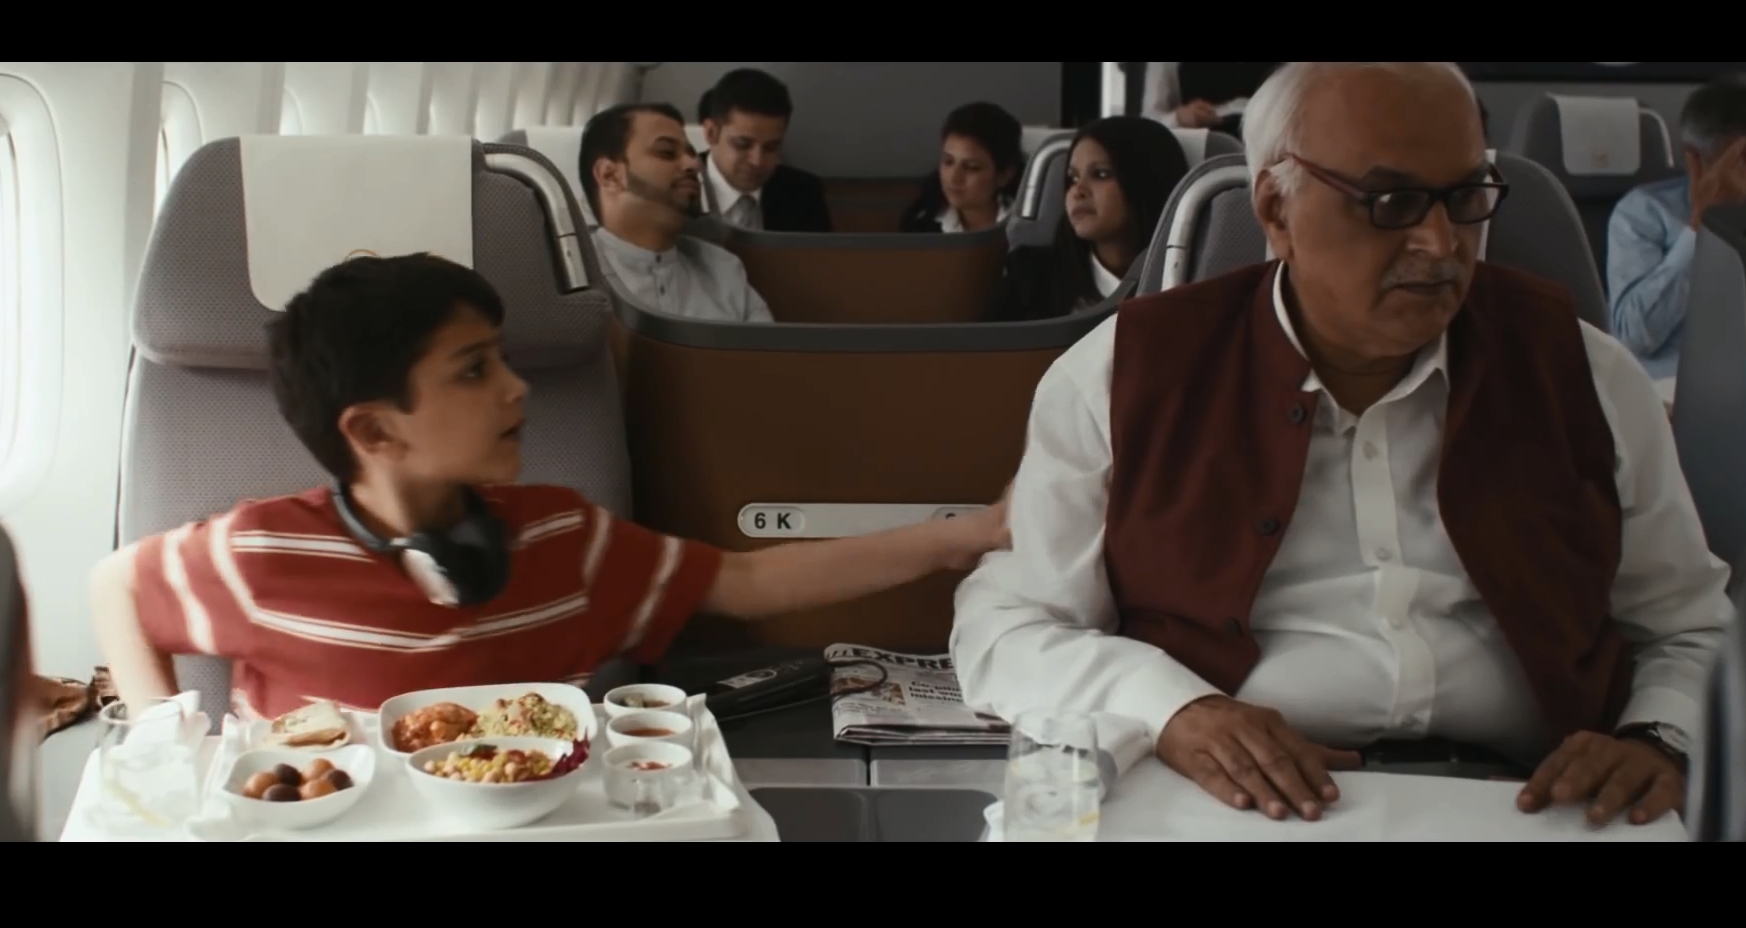 Lufthansa – An Indian heart?